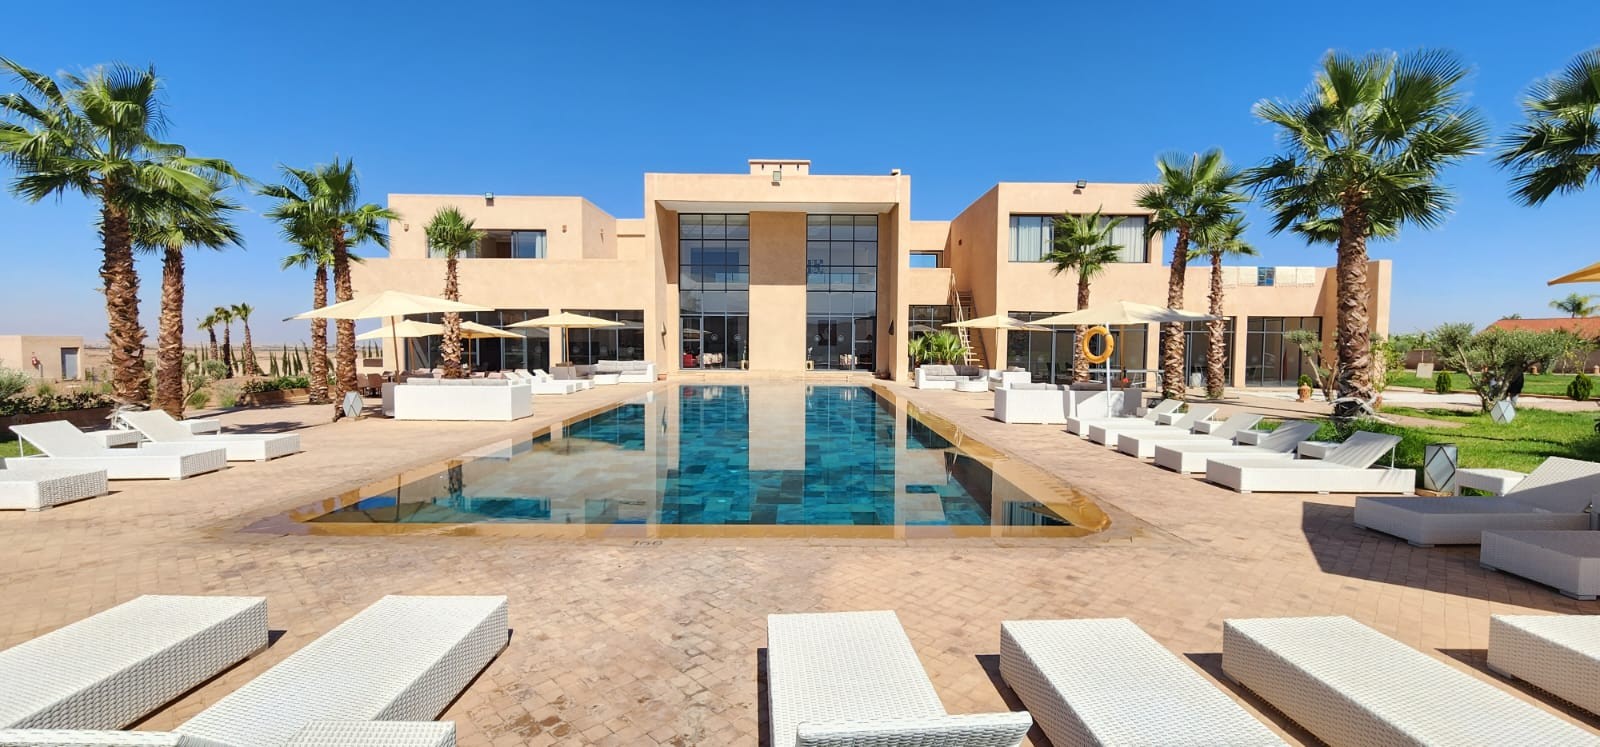 louer Villa Maha à Marrakech